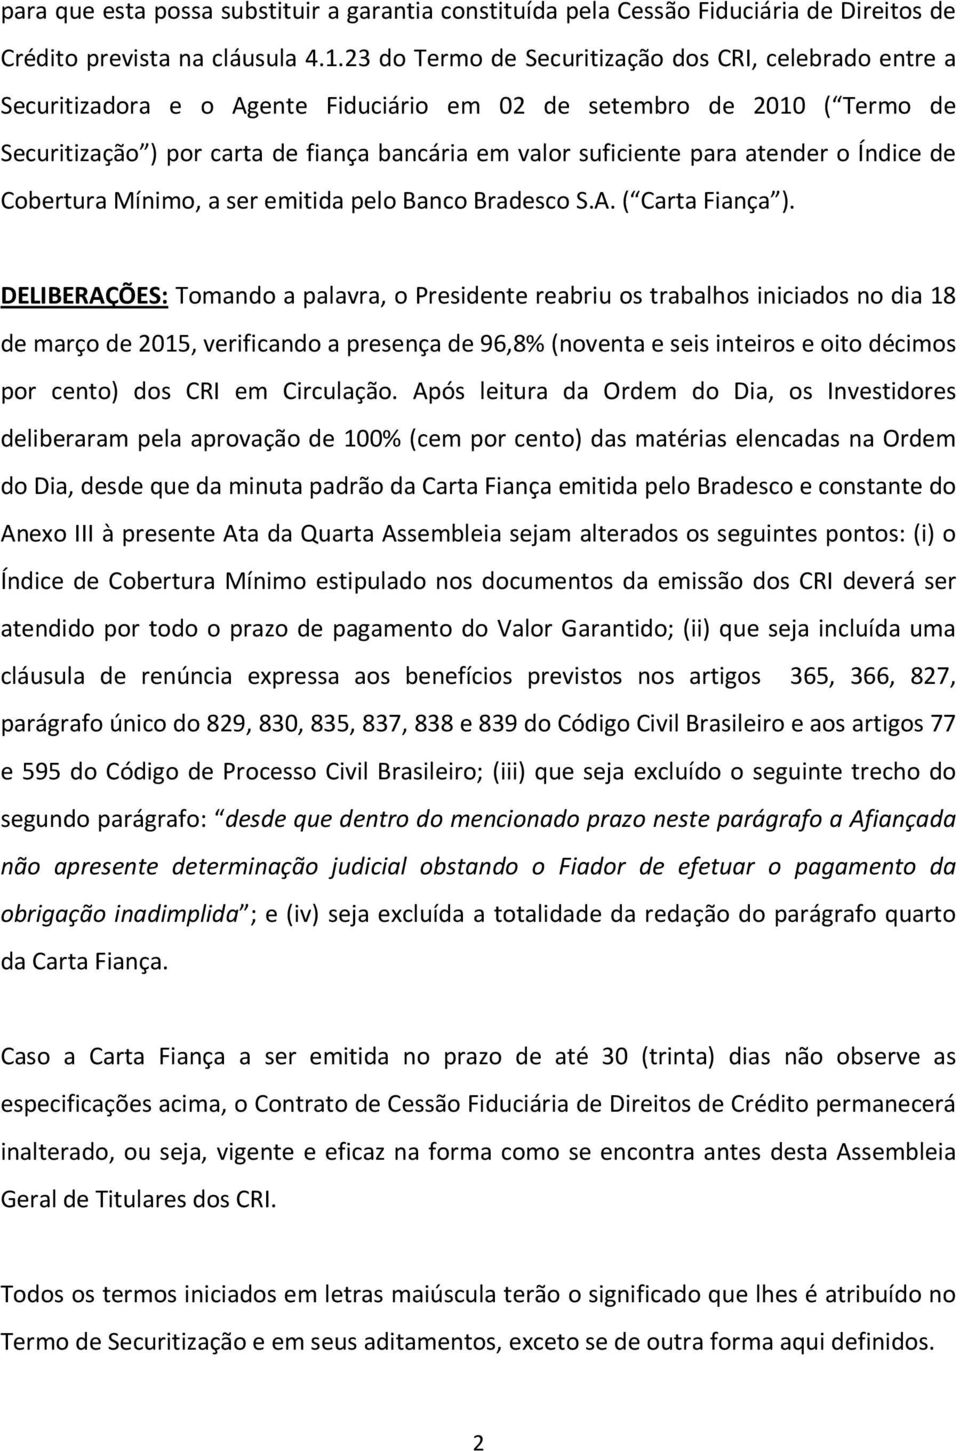 atender o Índice de Cobertura Mínimo, a ser emitida pelo Banco Bradesco S.A. ( Carta Fiança ).